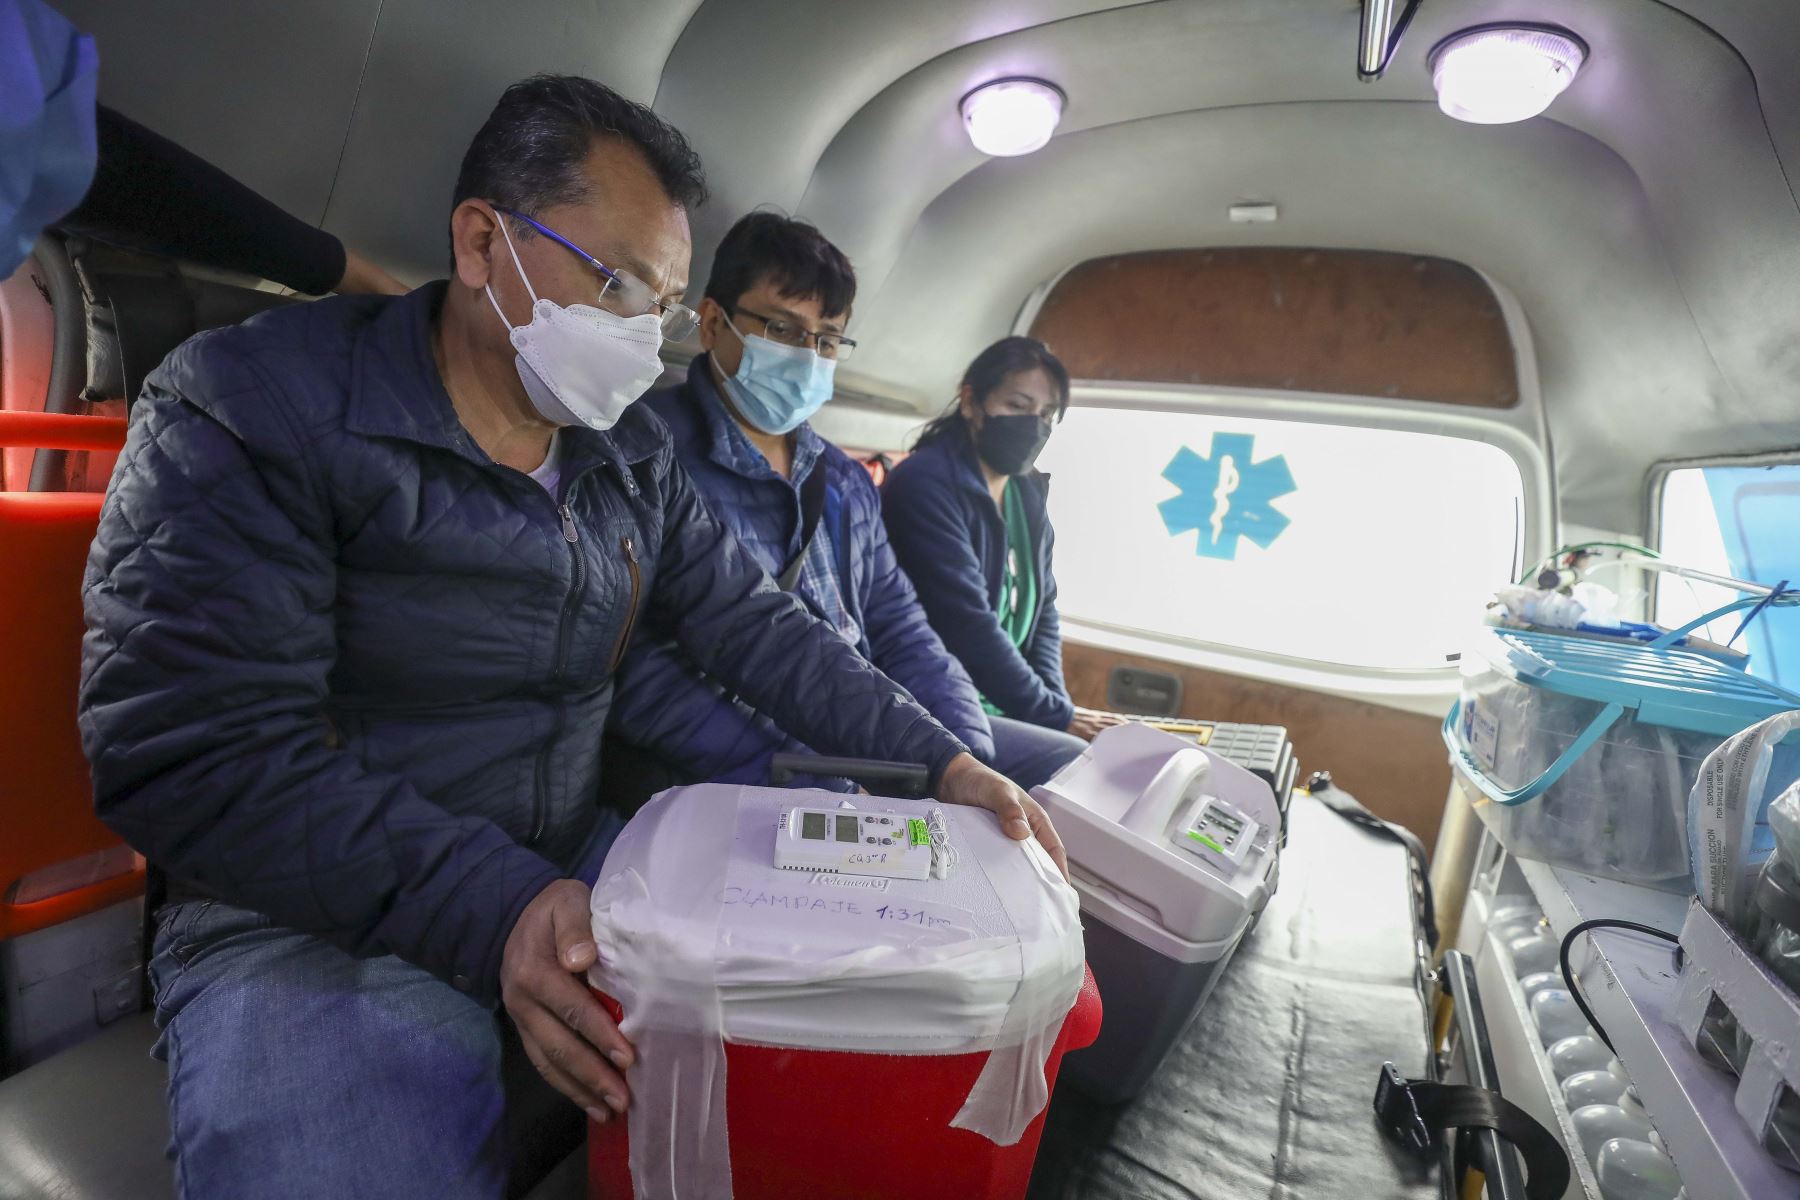 Familiares de paciente de Chimbote cedieron hígado, corazón y riñones que serán trasplantados a 3 adultos y 2 niños que estaban en lista de espera en Lima y Chiclayo. Foto: Essalud